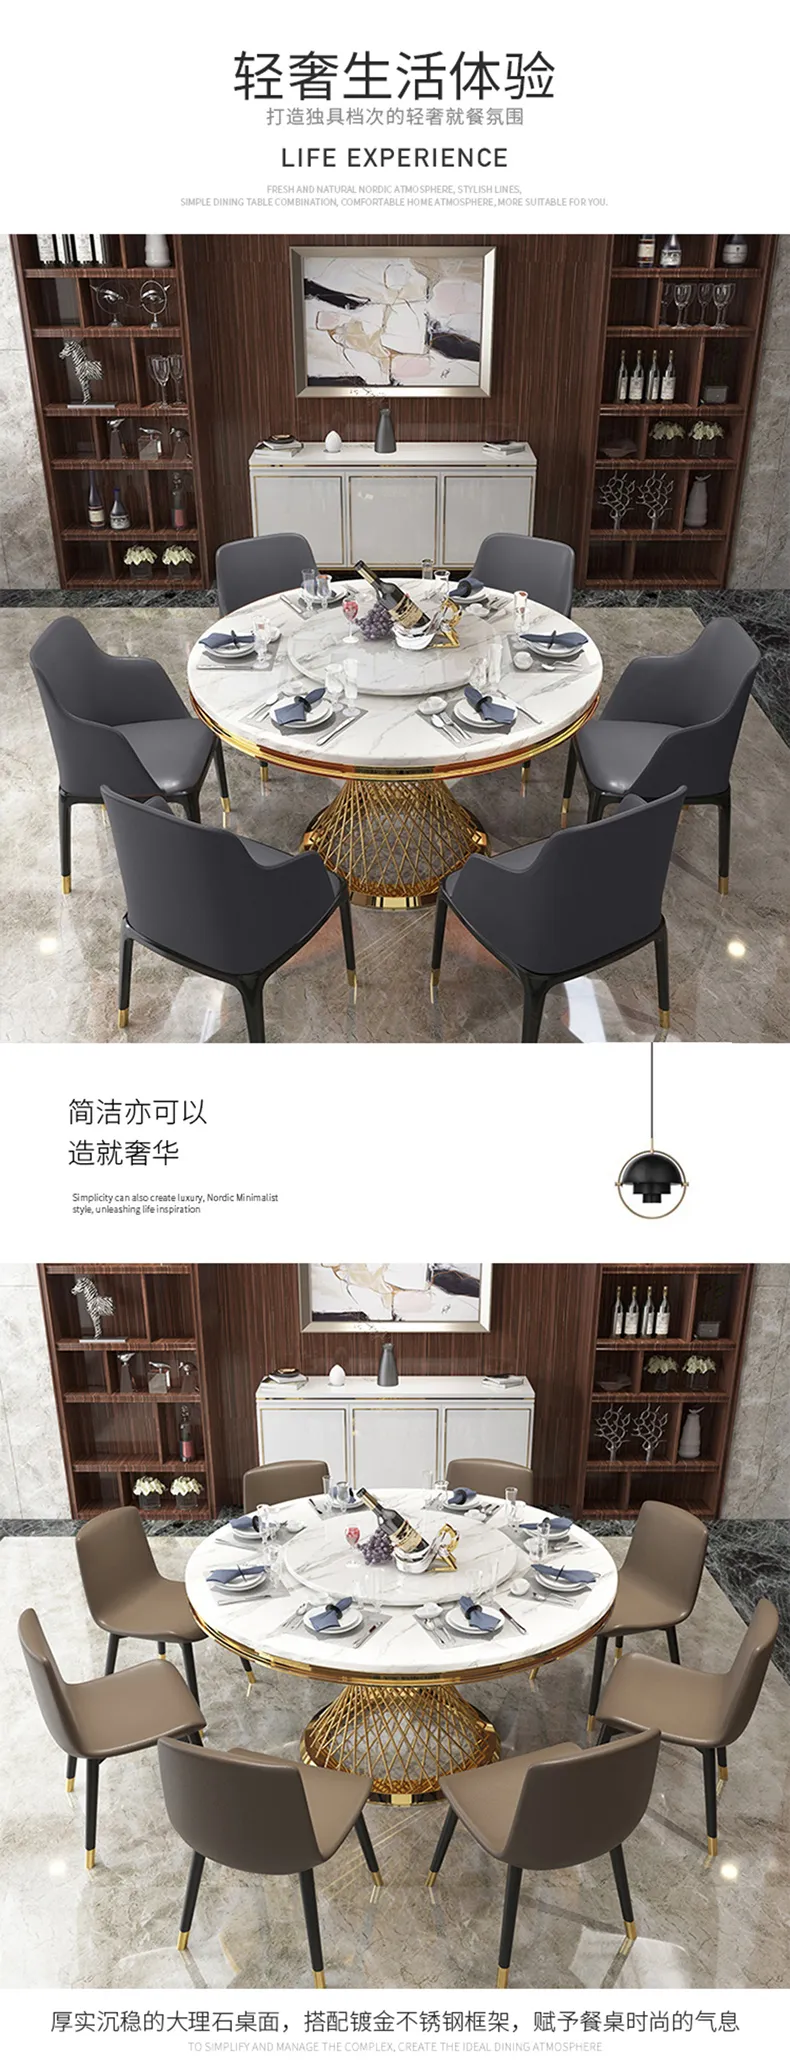 华松居 轻奢大理石圆餐桌椅组合 现代简约家用 CT822-29#(图2)